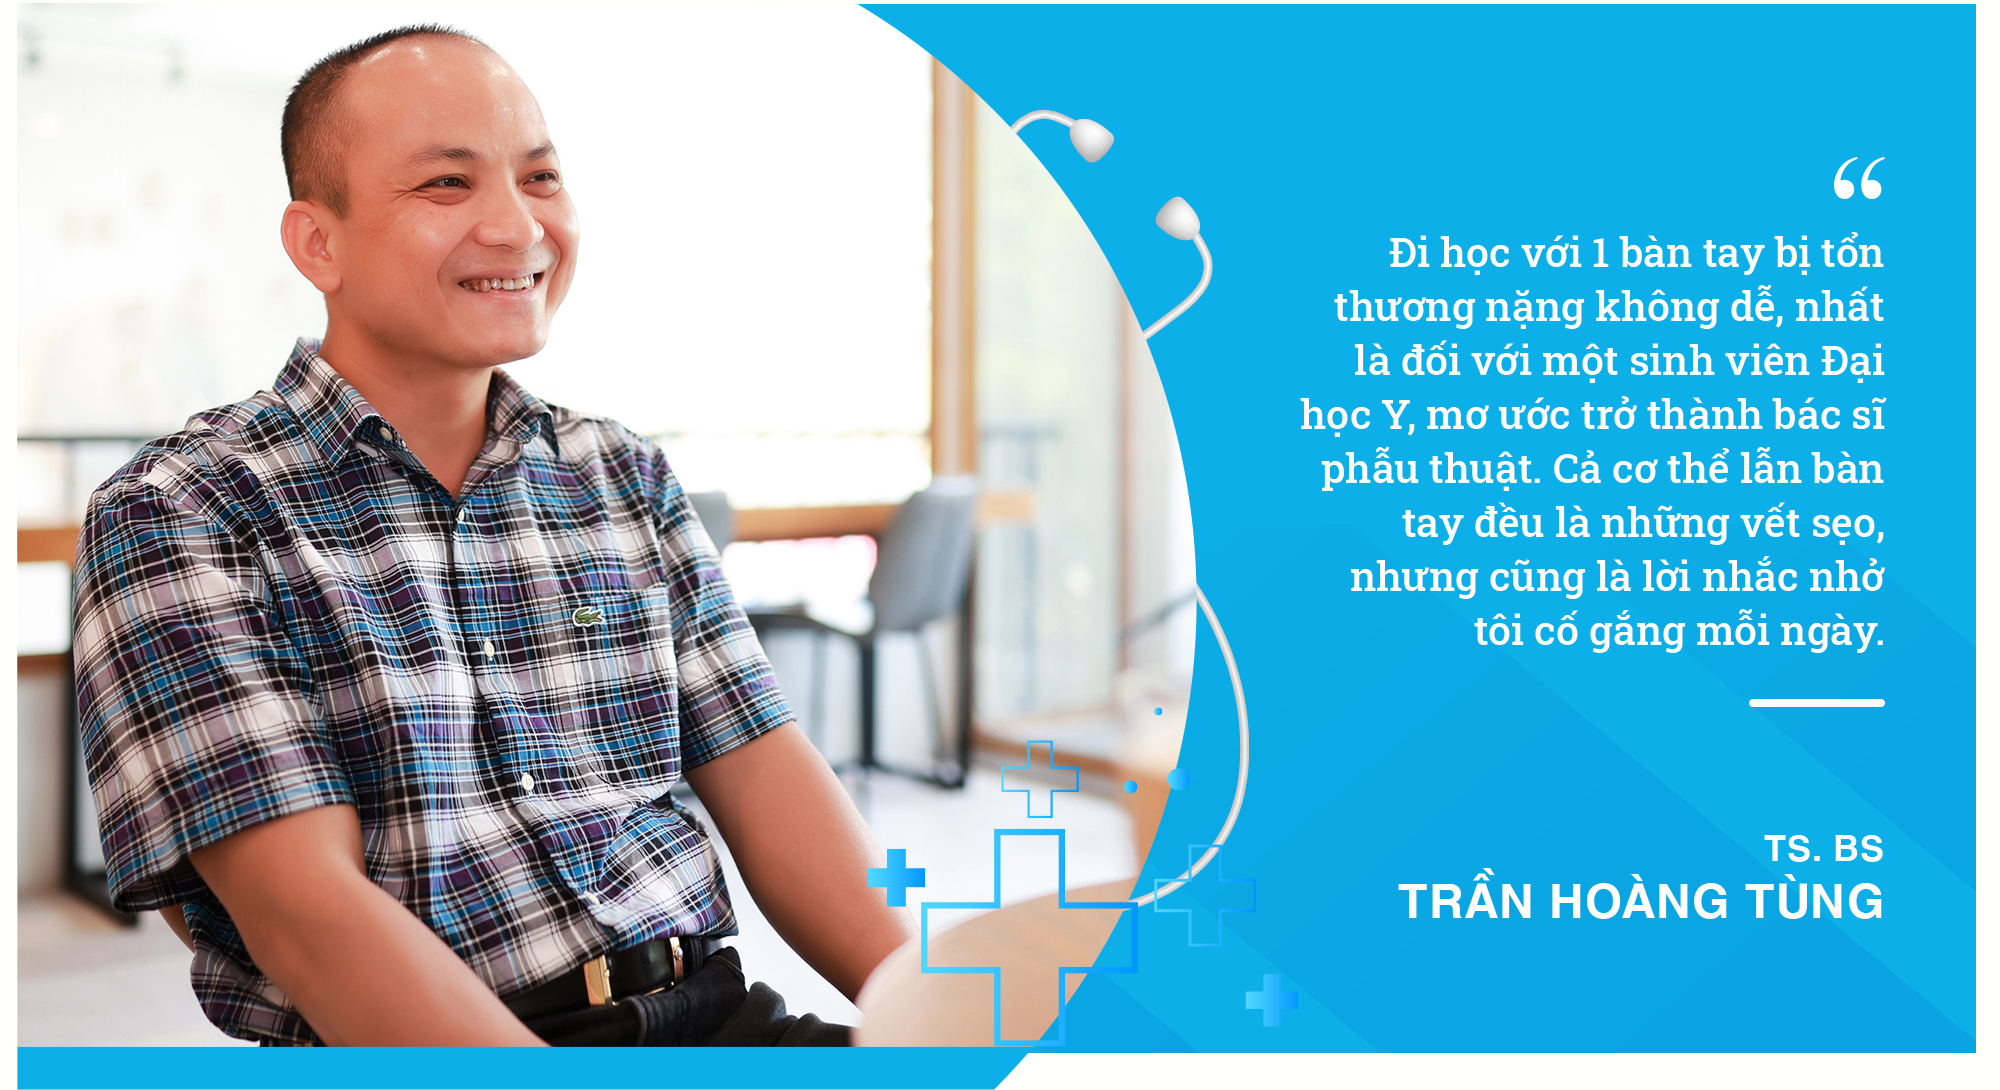 TS. BS Trần Hoàng Tùng - 19 tuổi bị tai nạn dập nát tay và hành trình 15 năm bền bỉ với nghề Y - Ảnh 4.